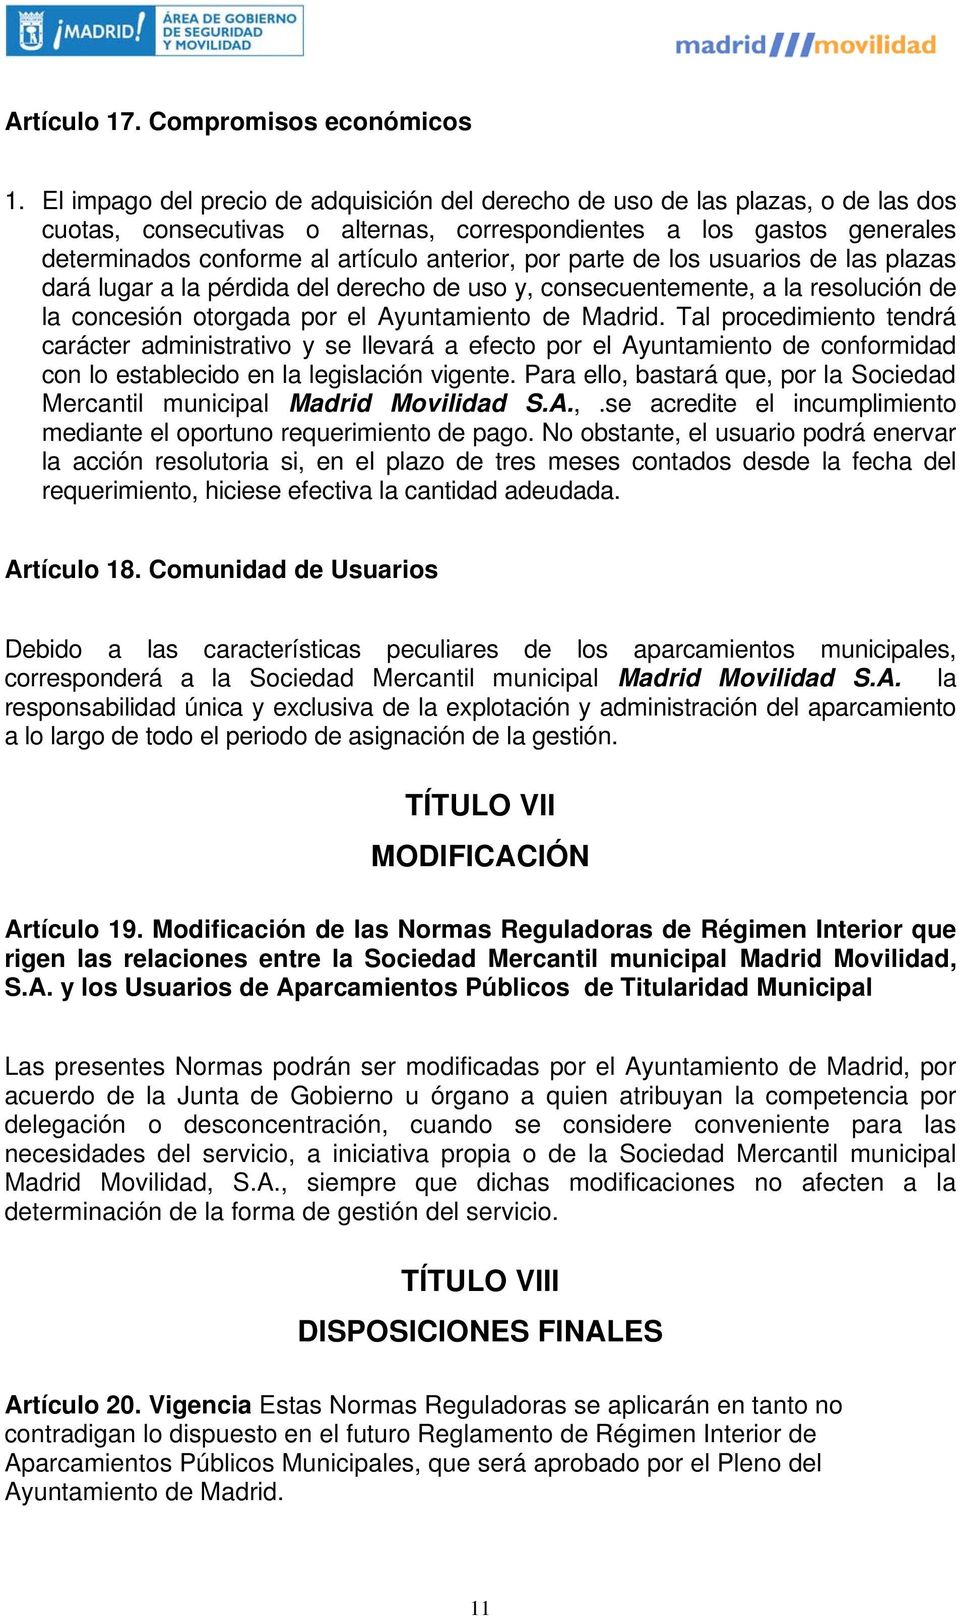 por parte de los usuarios de las plazas dará lugar a la pérdida del derecho de uso y, consecuentemente, a la resolución de la concesión otorgada por el Ayuntamiento de Madrid.